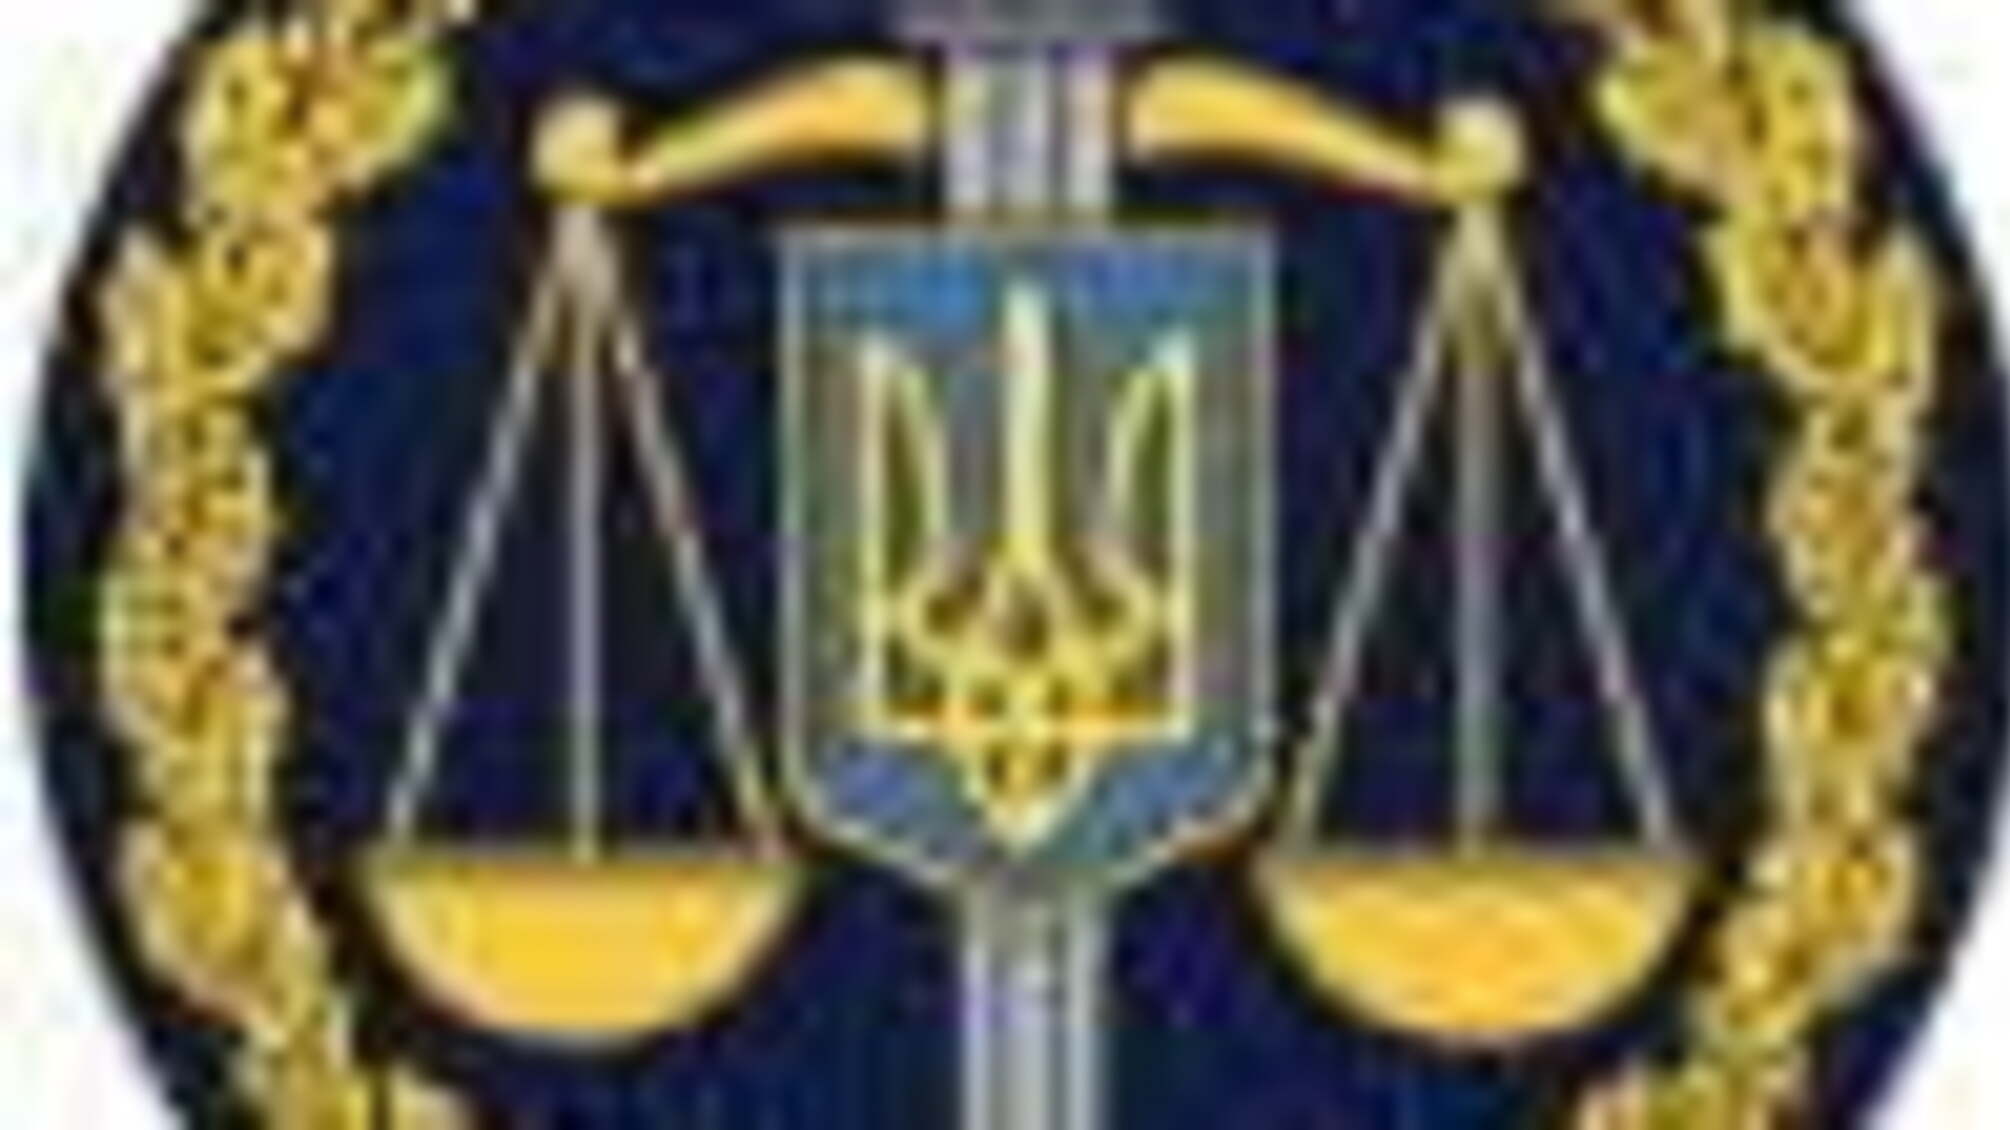 Припинено діяльність незаконного грального закладу у м. Харків (ФОТО)